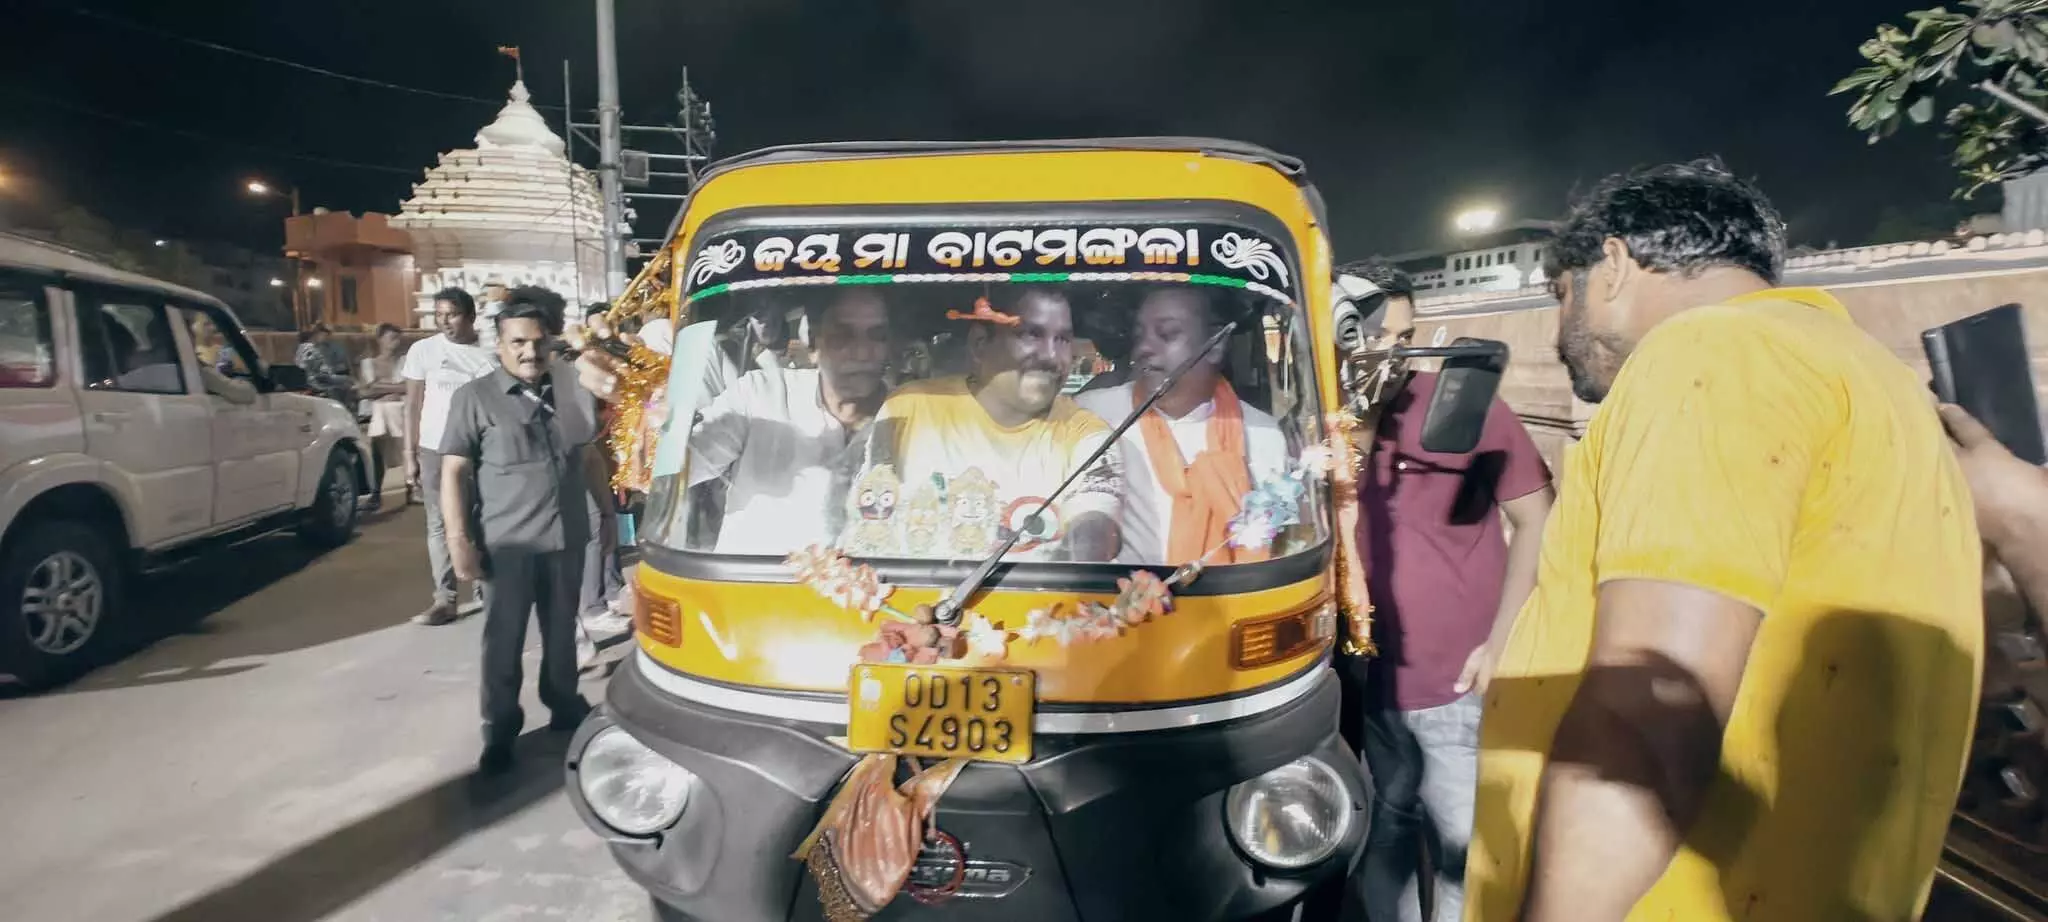 विधायक राजेश मूणत ने ओड़िशा में ऑटो की सवारी की, VIDEO